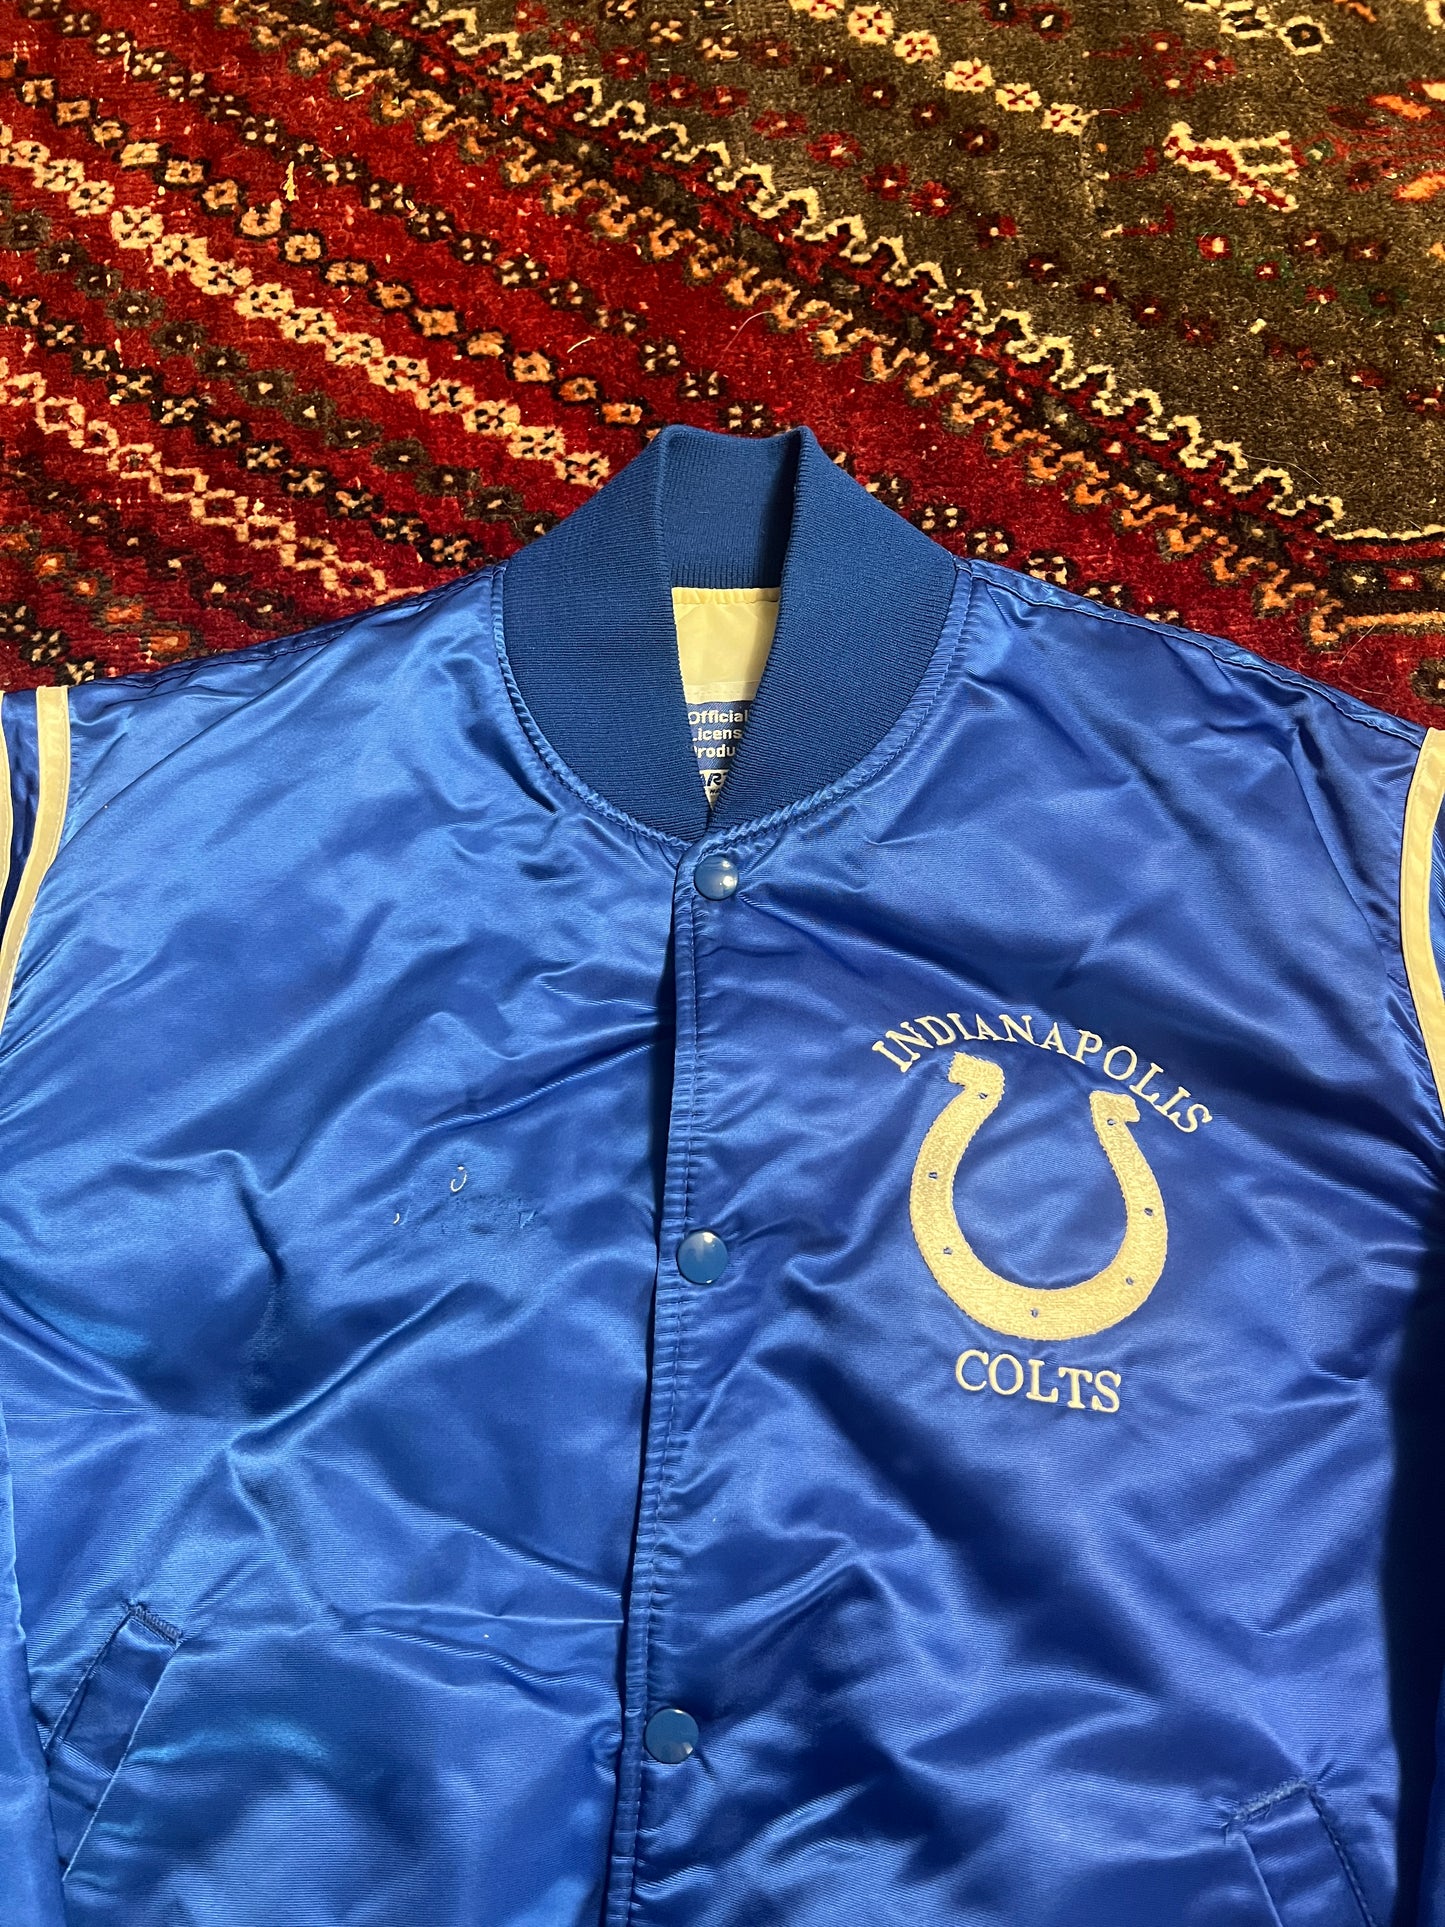 Colts Satin Jacket M/L